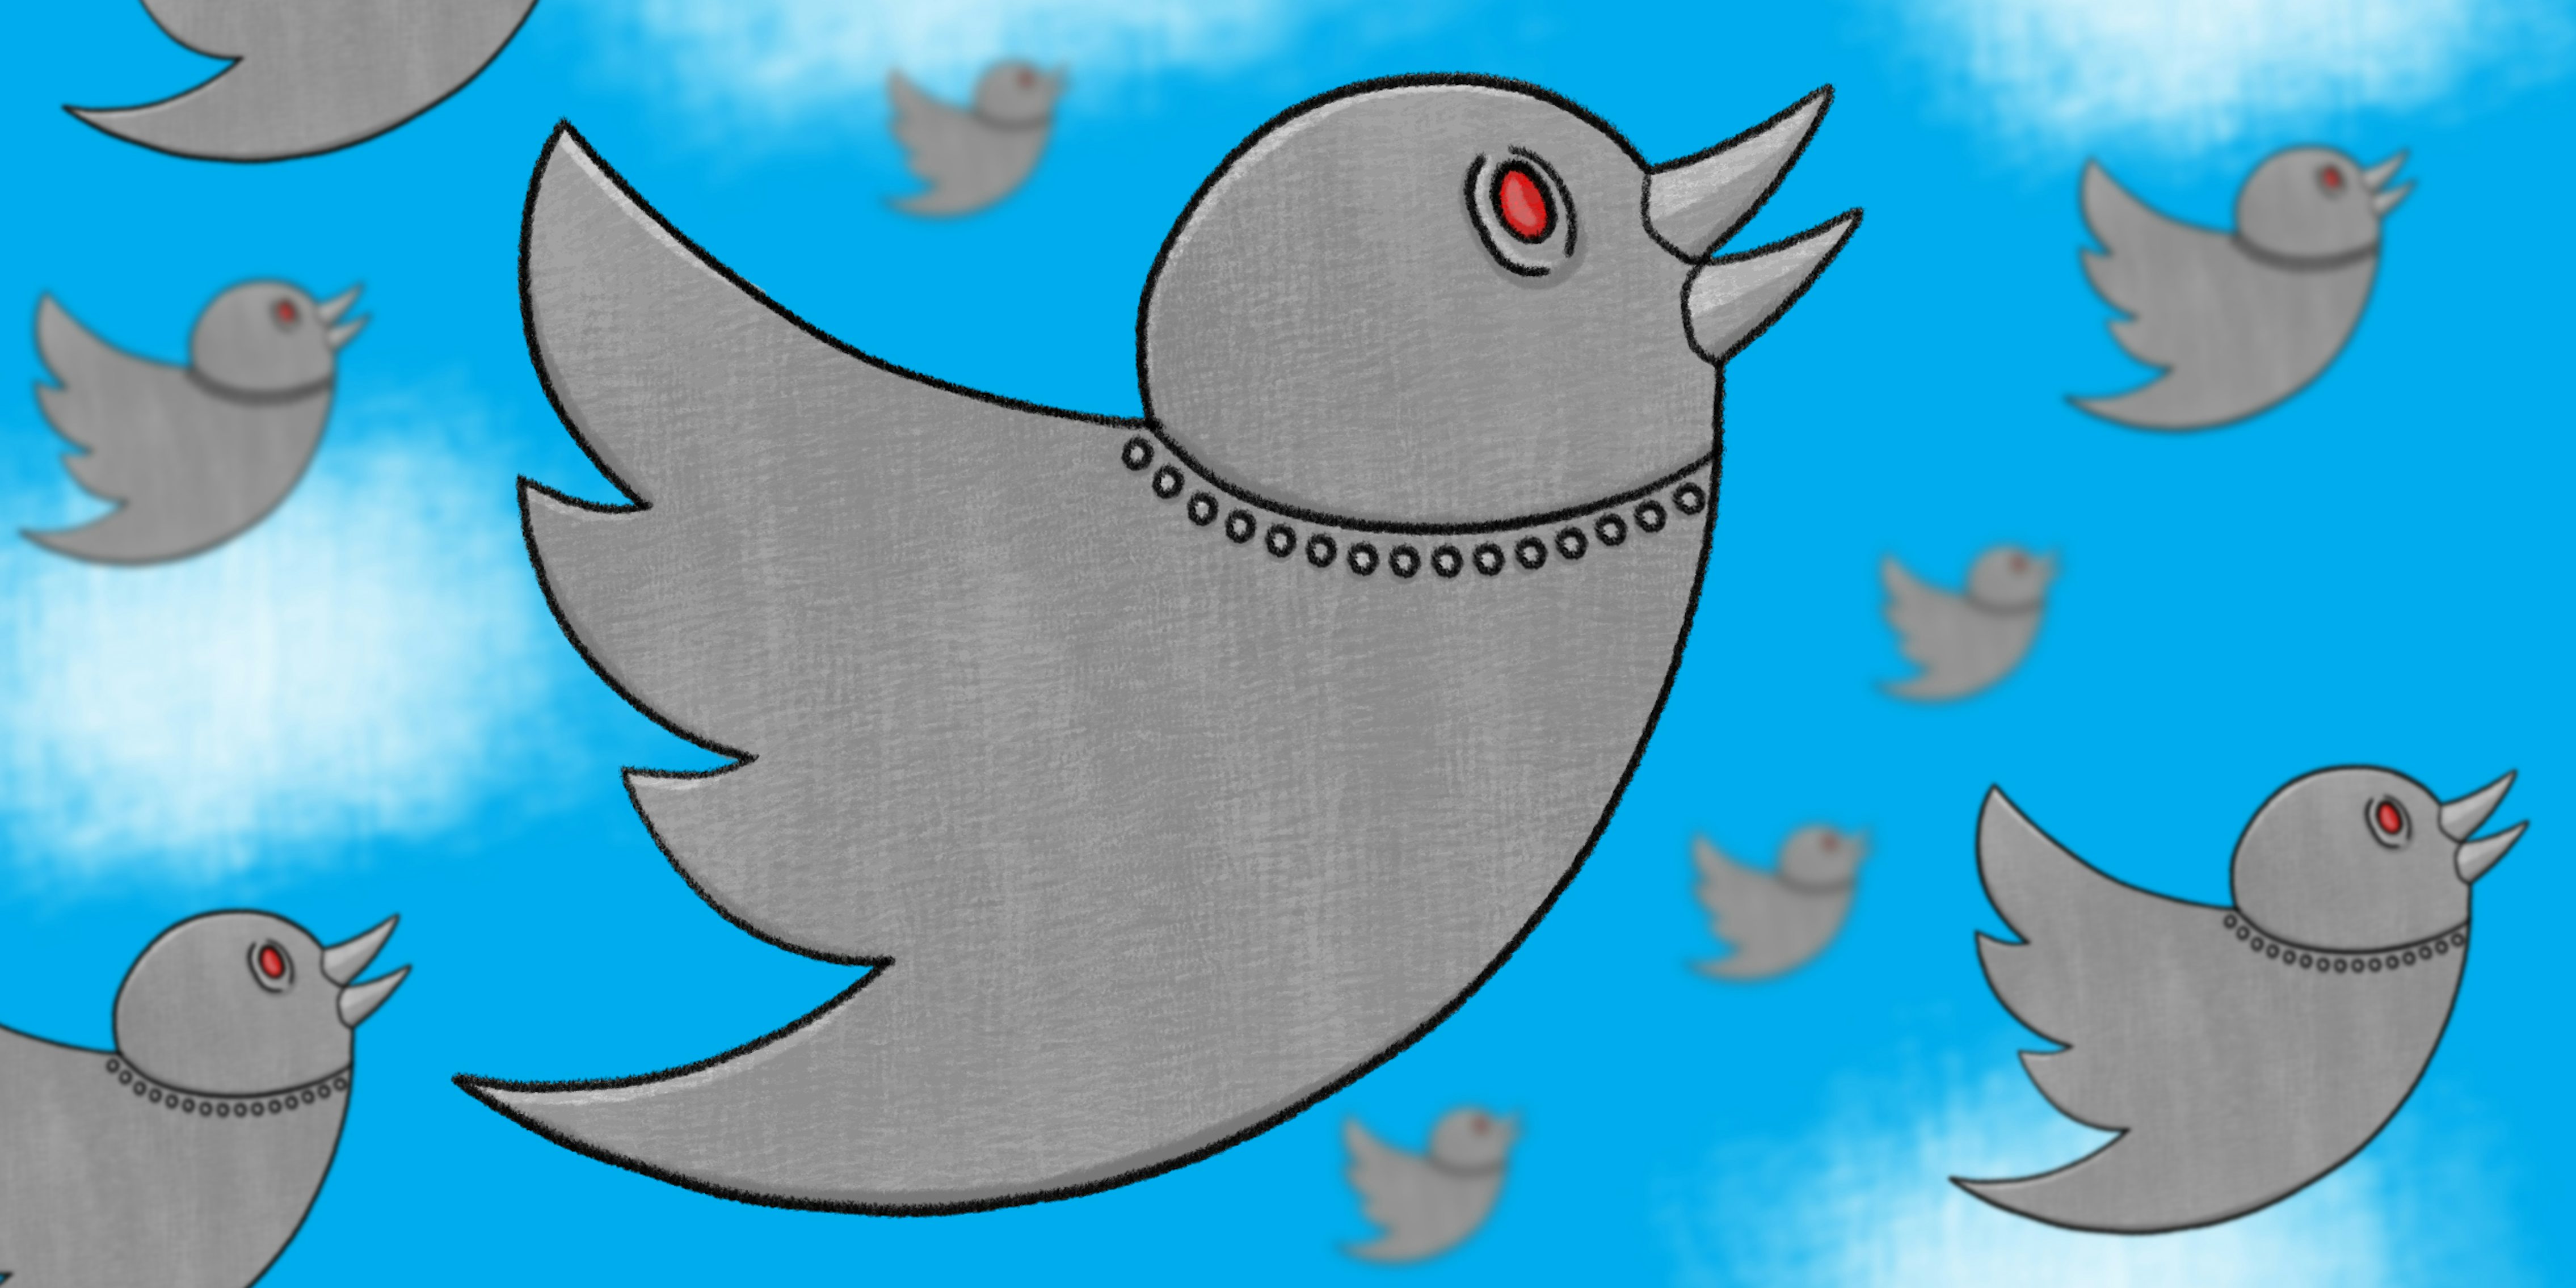 Robotic Twitter birds in flight